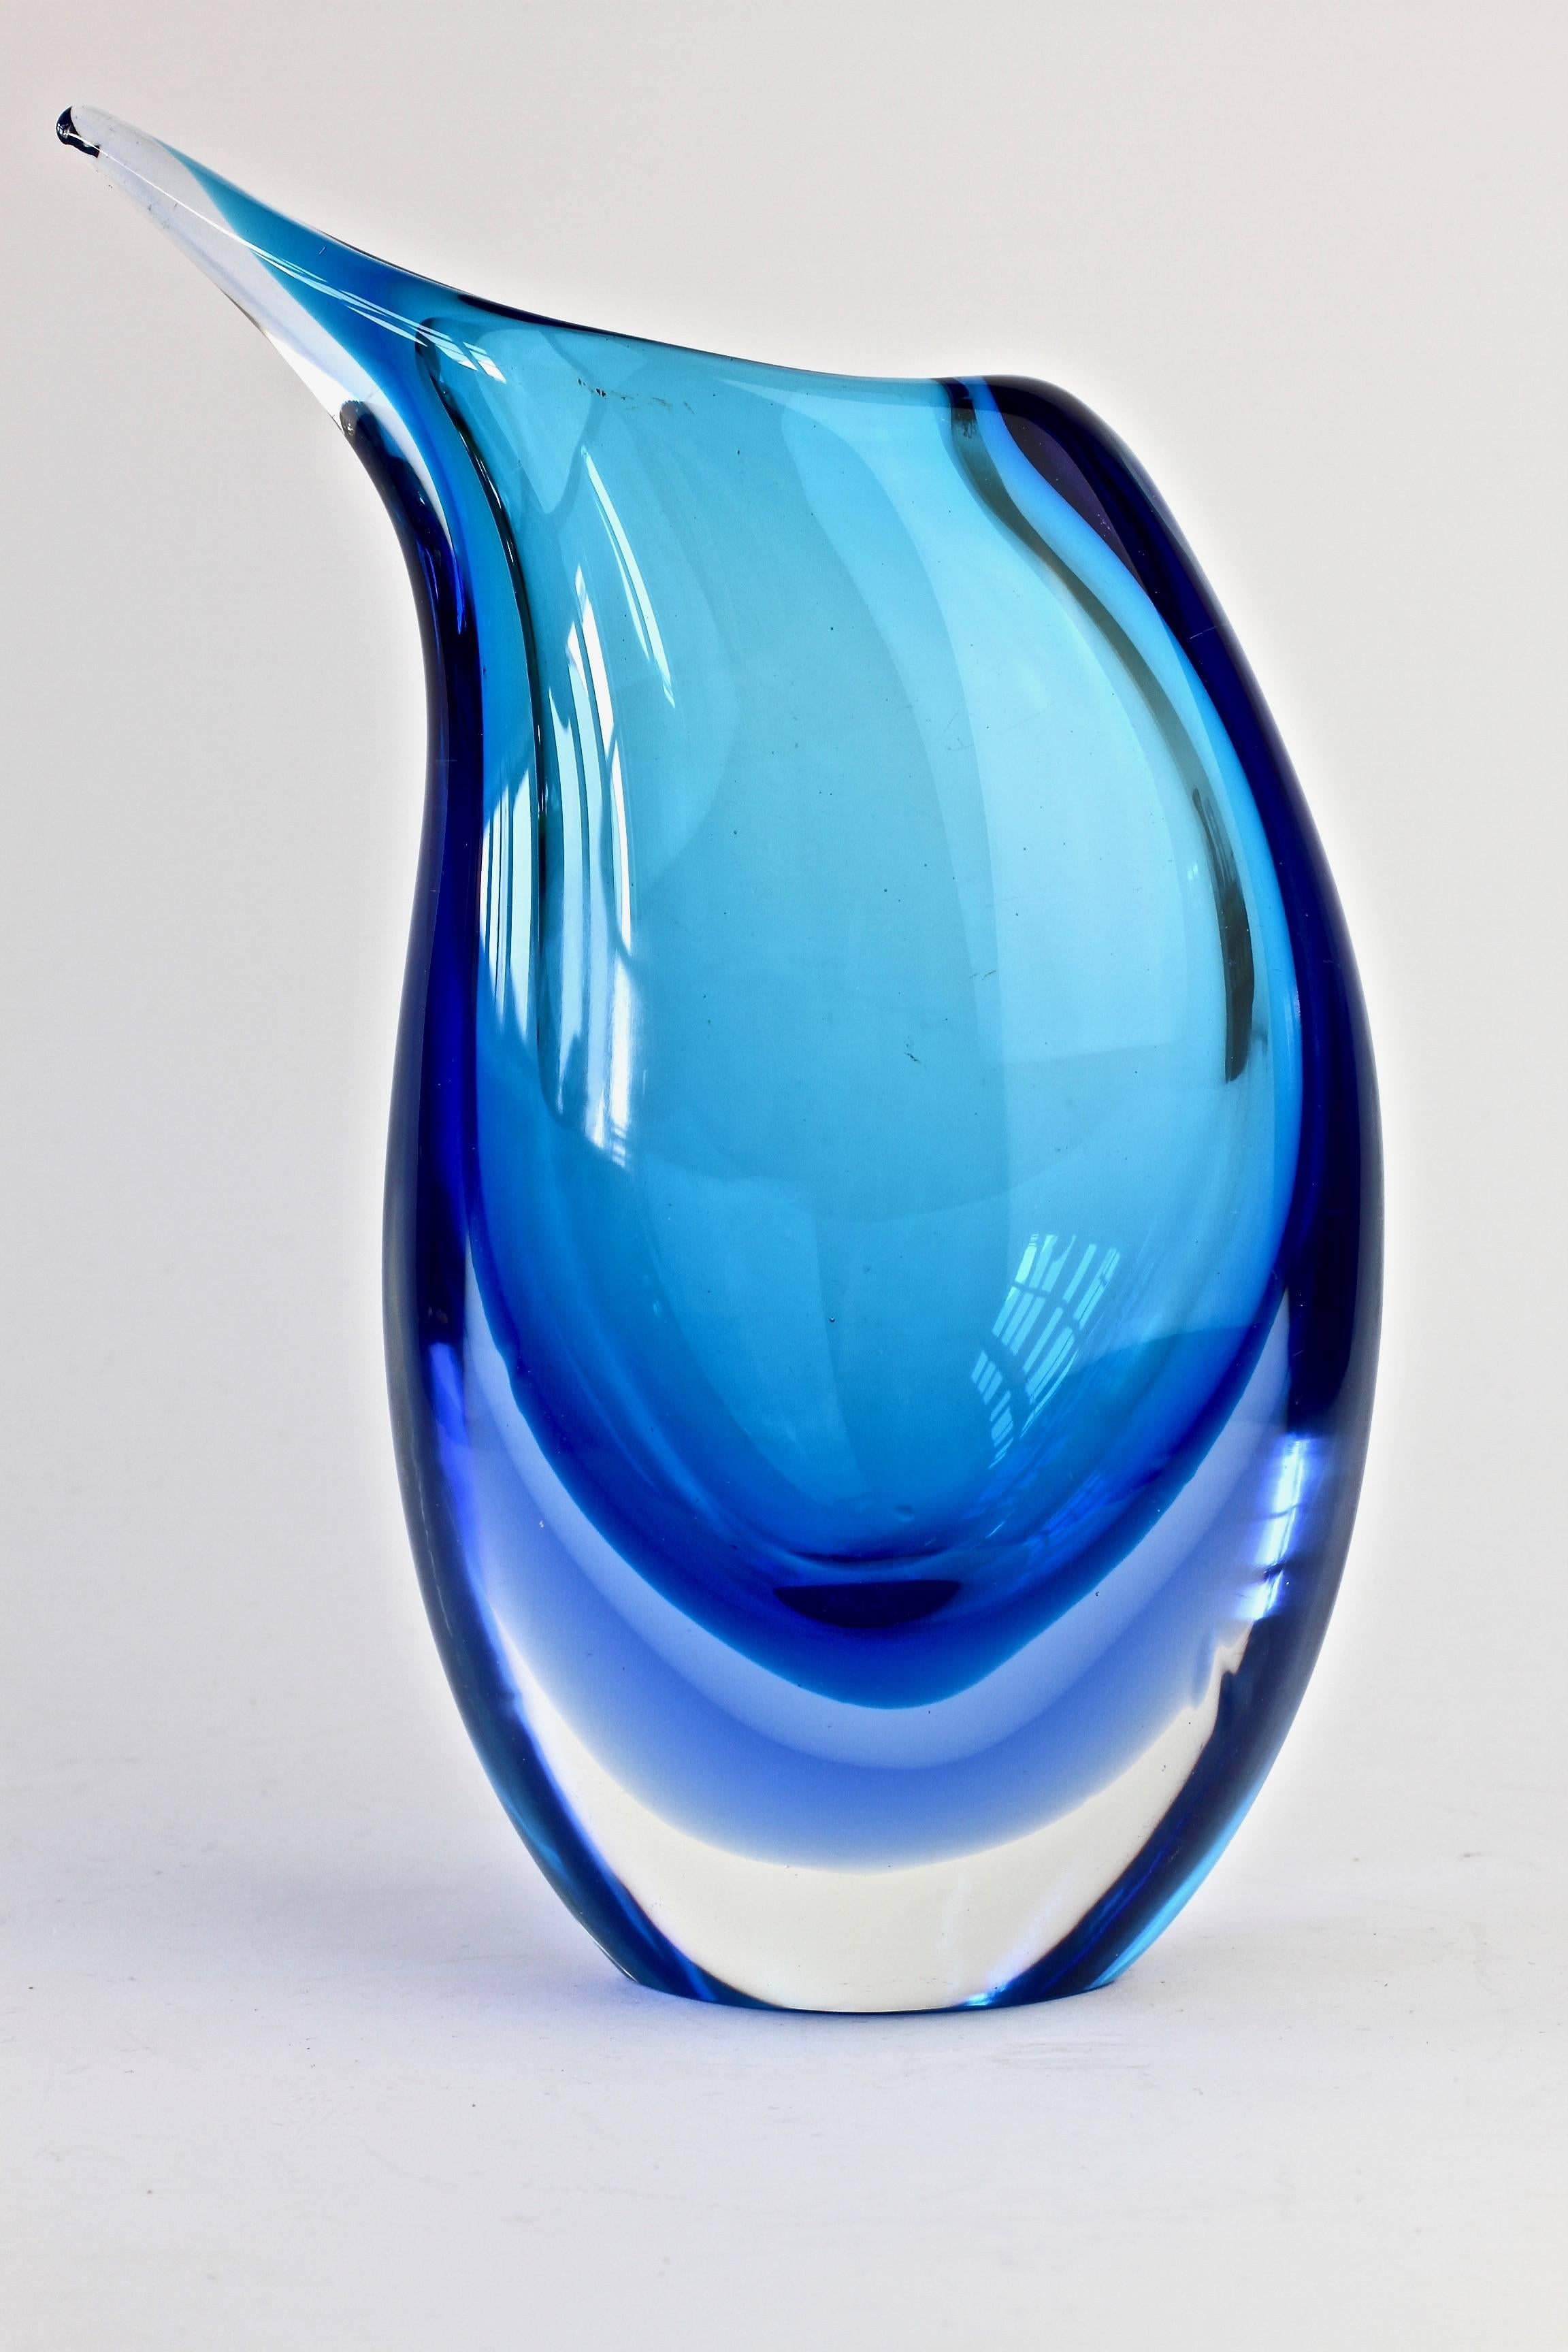 20th Century Italian Murano 'Sommerso' Glass Vase Attributed to Flavio Poli for Seguso 1960s